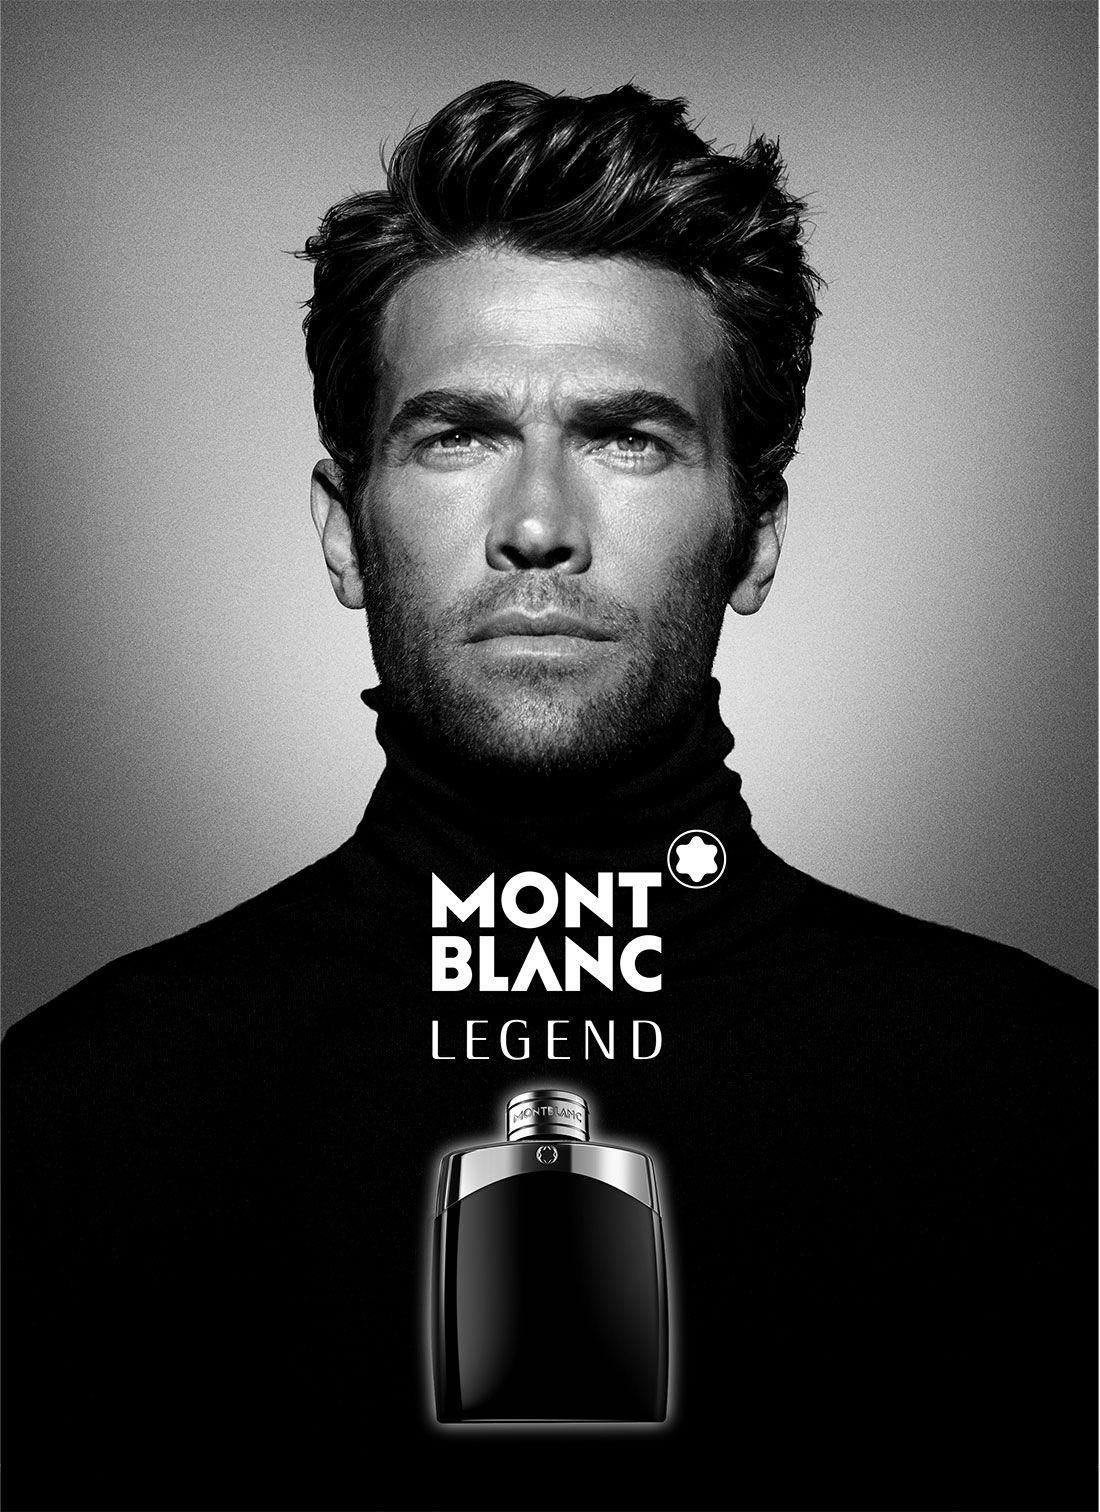 Legend Montblanc cologne - a fragrance for men 2011